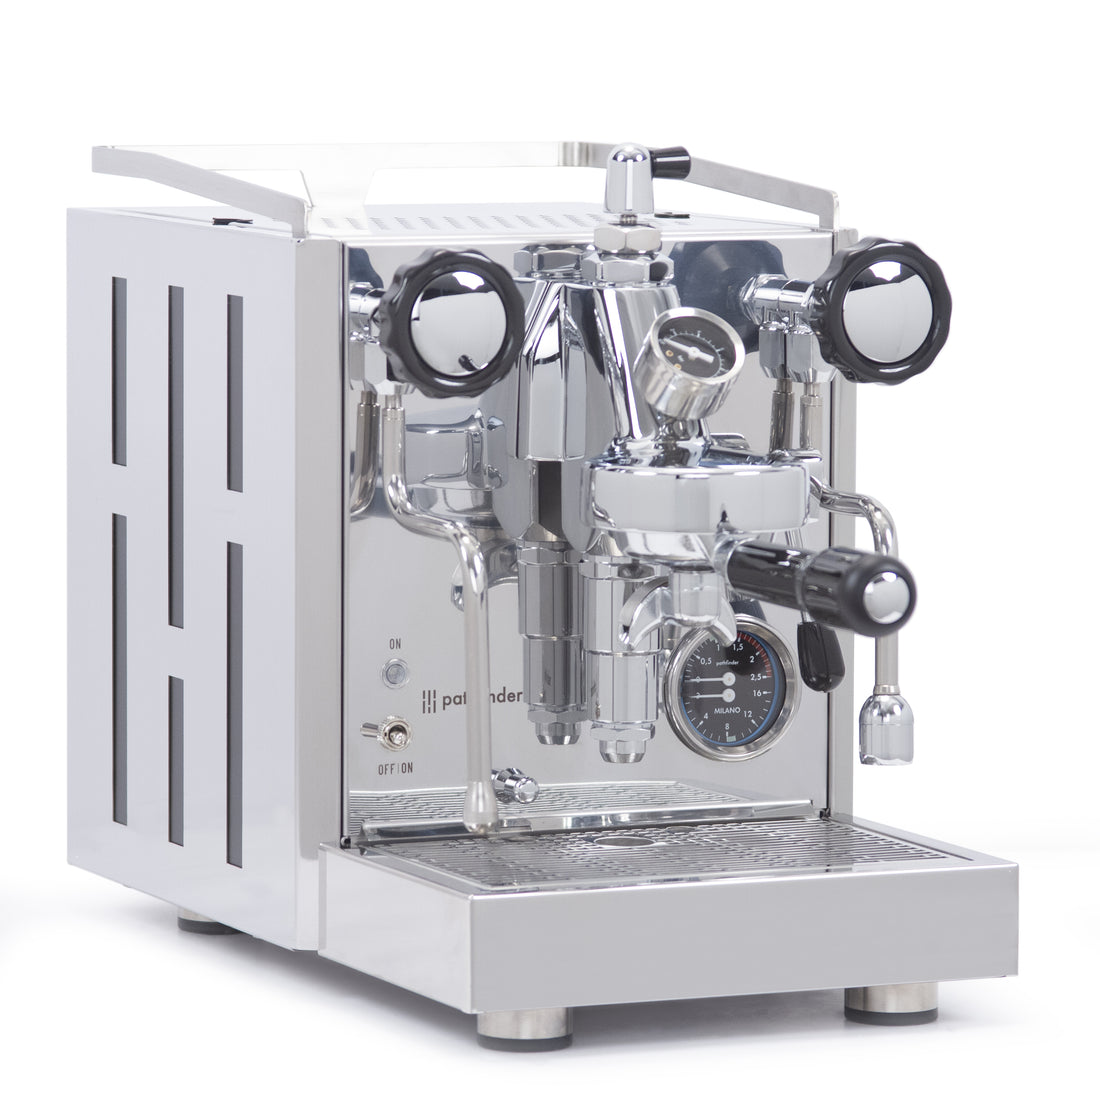 Pathfinder Heat Exchanger Espresso Machine with Flow Control